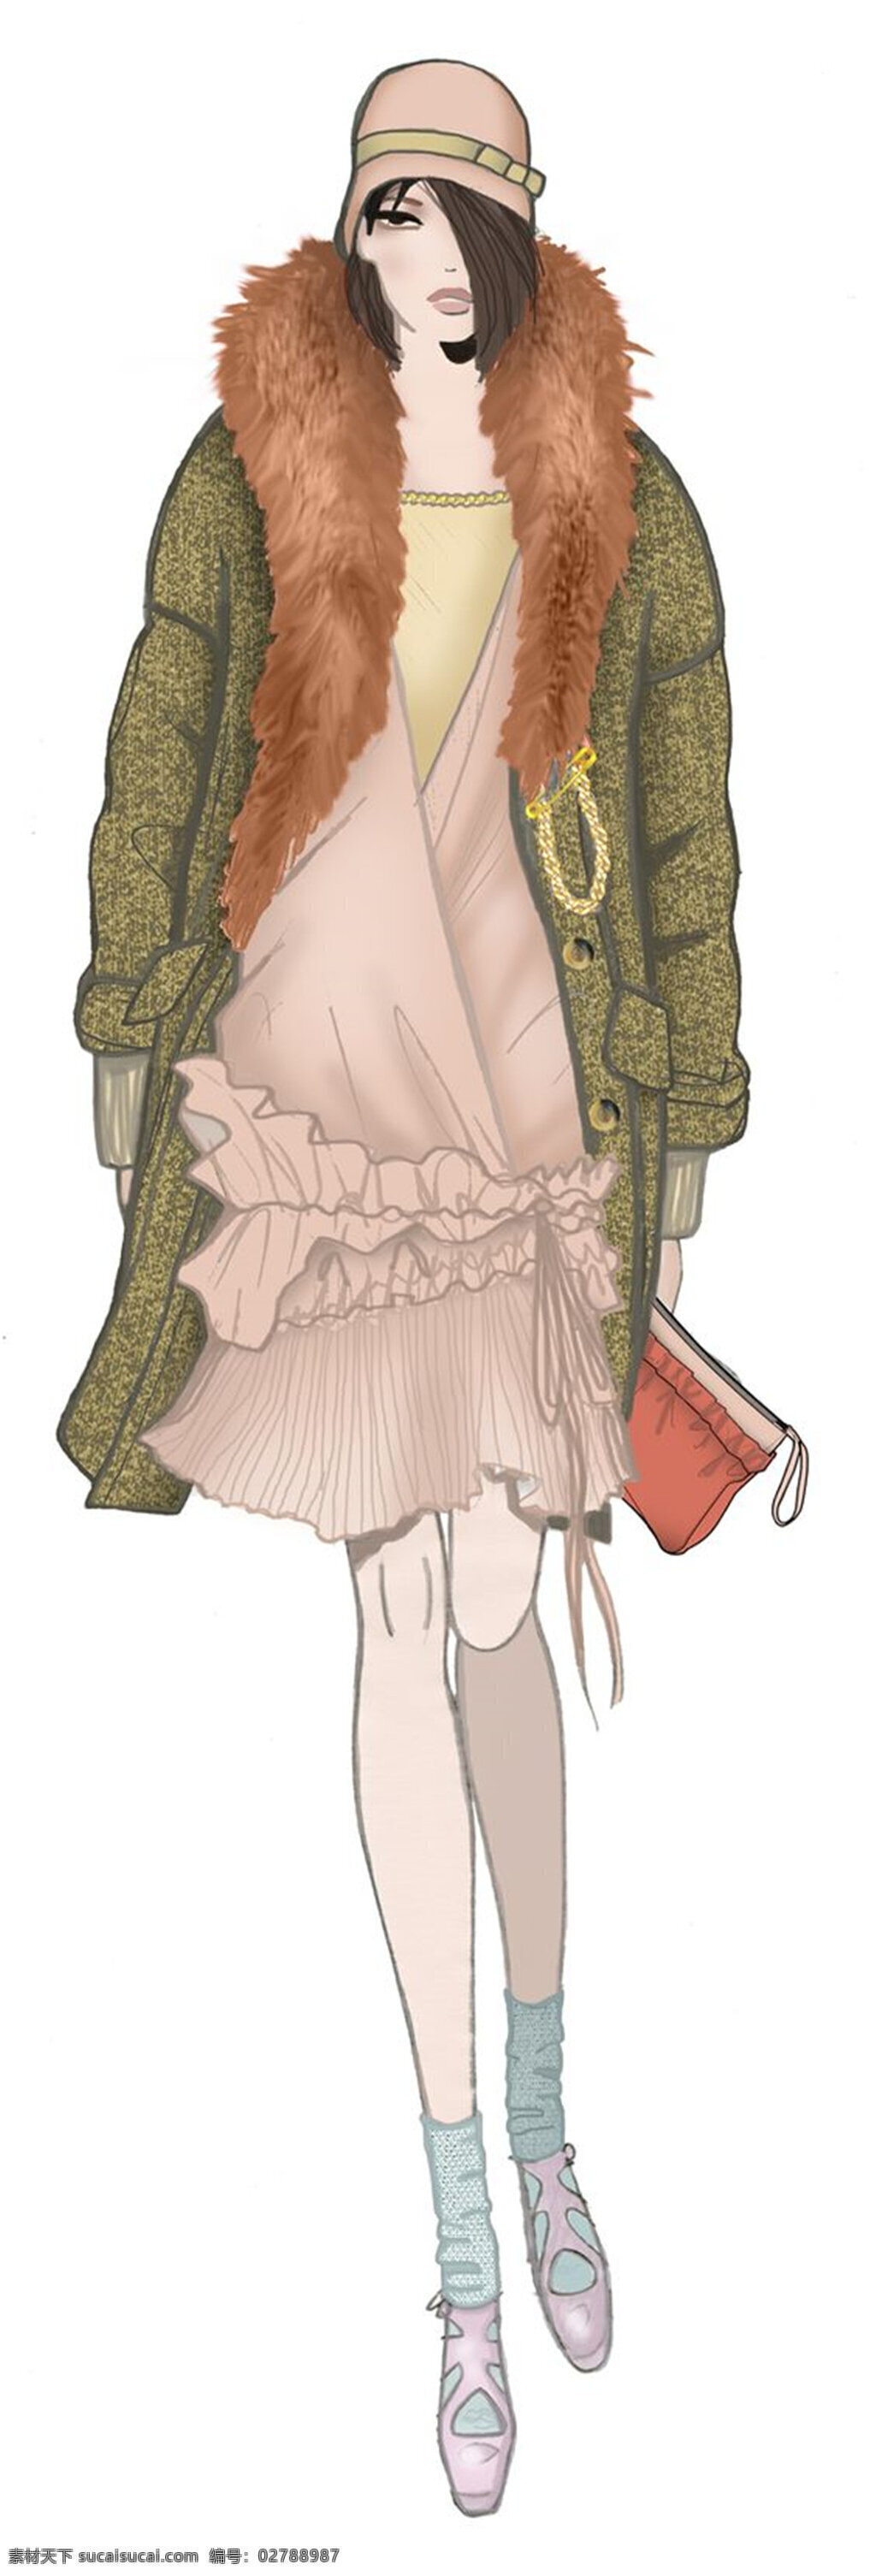 时尚 橙色 毛领 大衣 女装 效果图 粉色裙子 服装设计 服装效果图